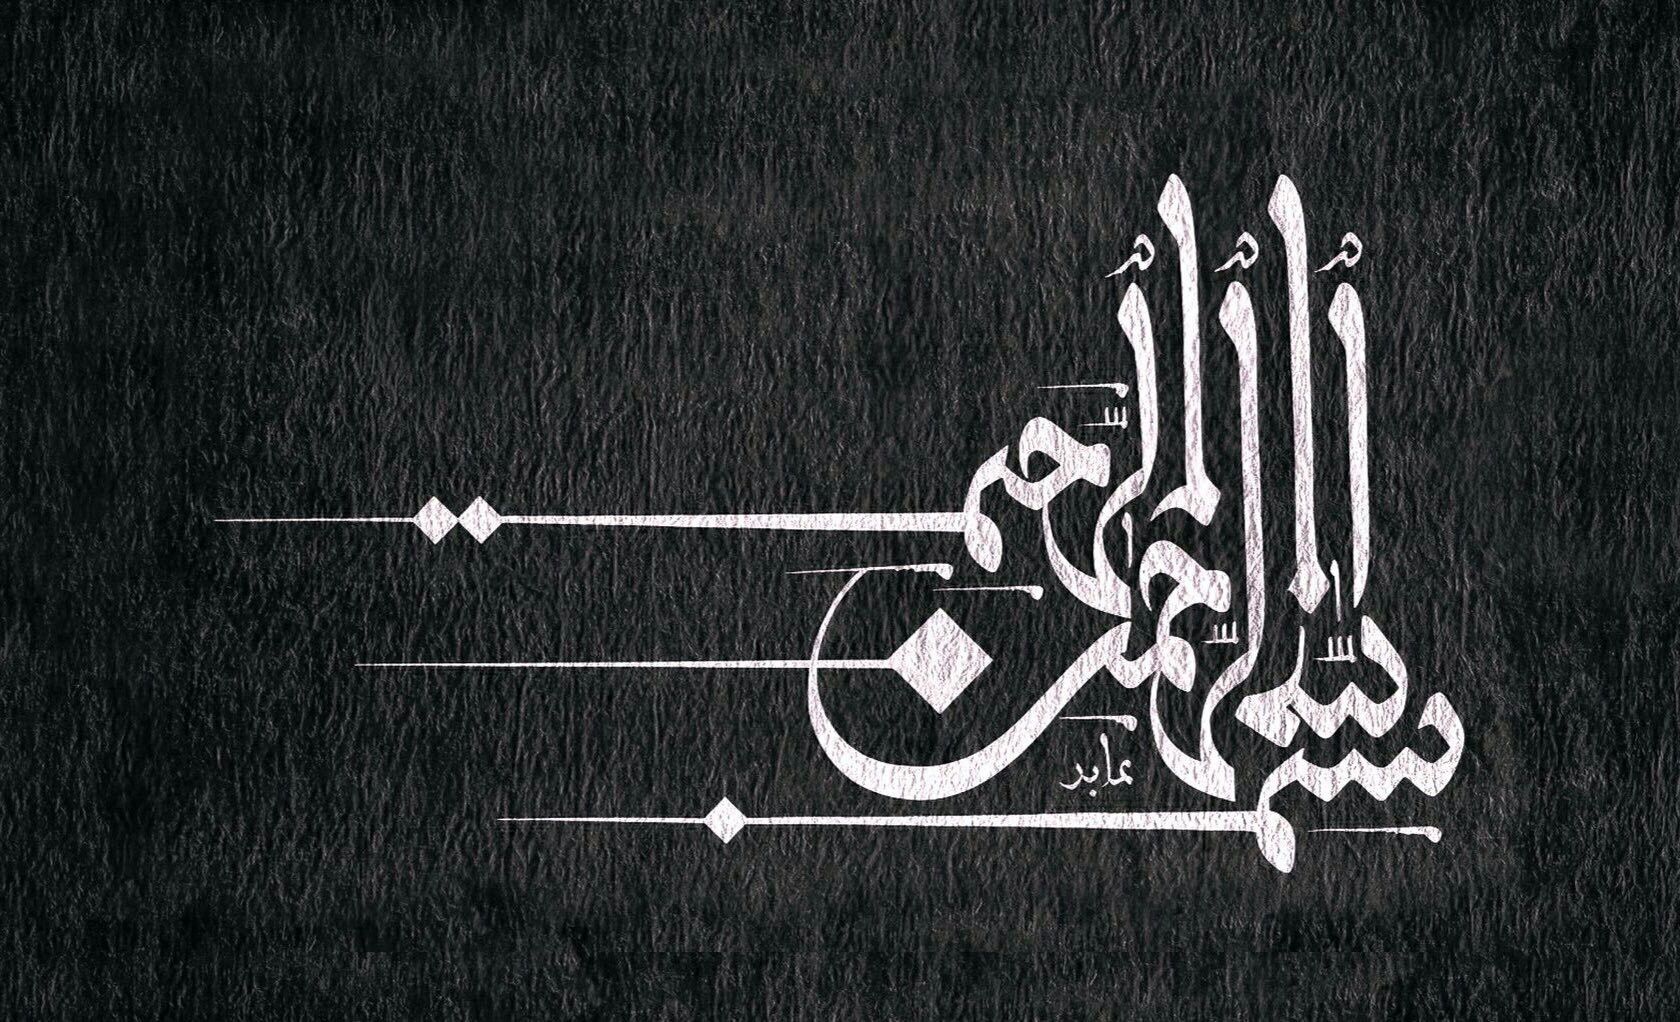 بسم الله الرحمن الرحيم. Islamic wallpaper hd, Calligraphy wall art, Islamic wallpaper